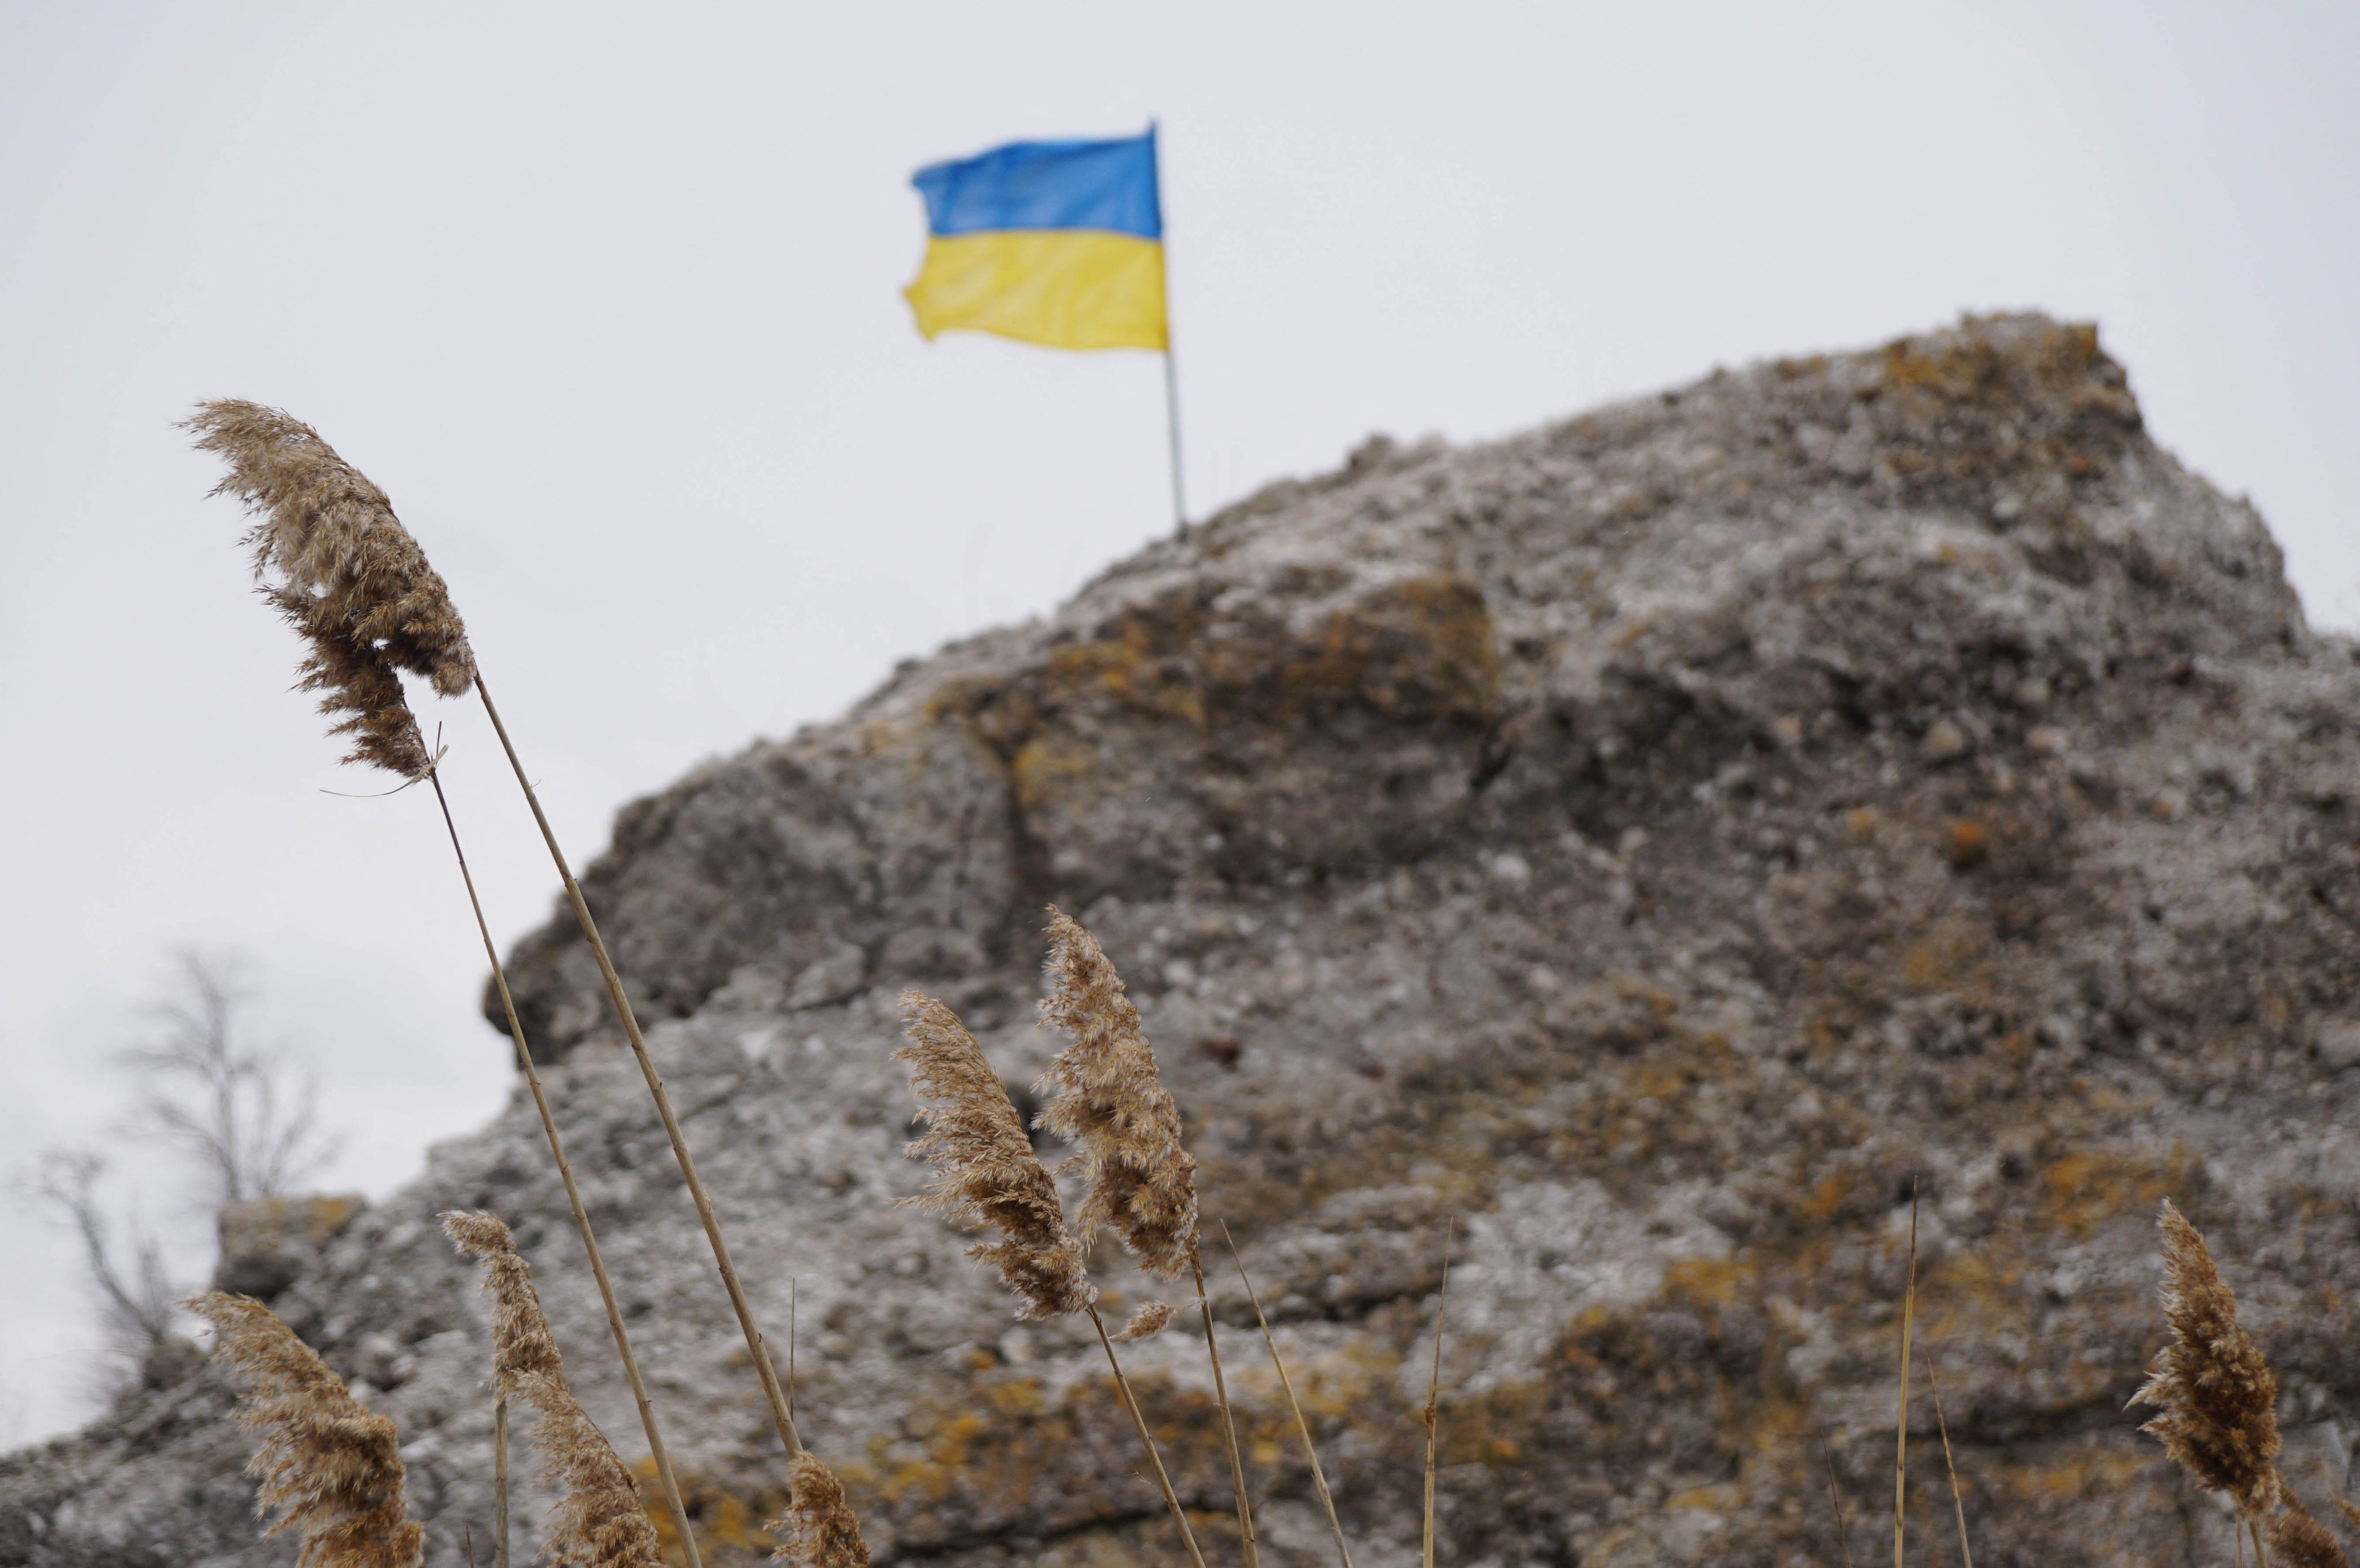 13 ukrán nemzeti zászlót lopott el, most évekre börtönbe mehet egy odeszai férfi